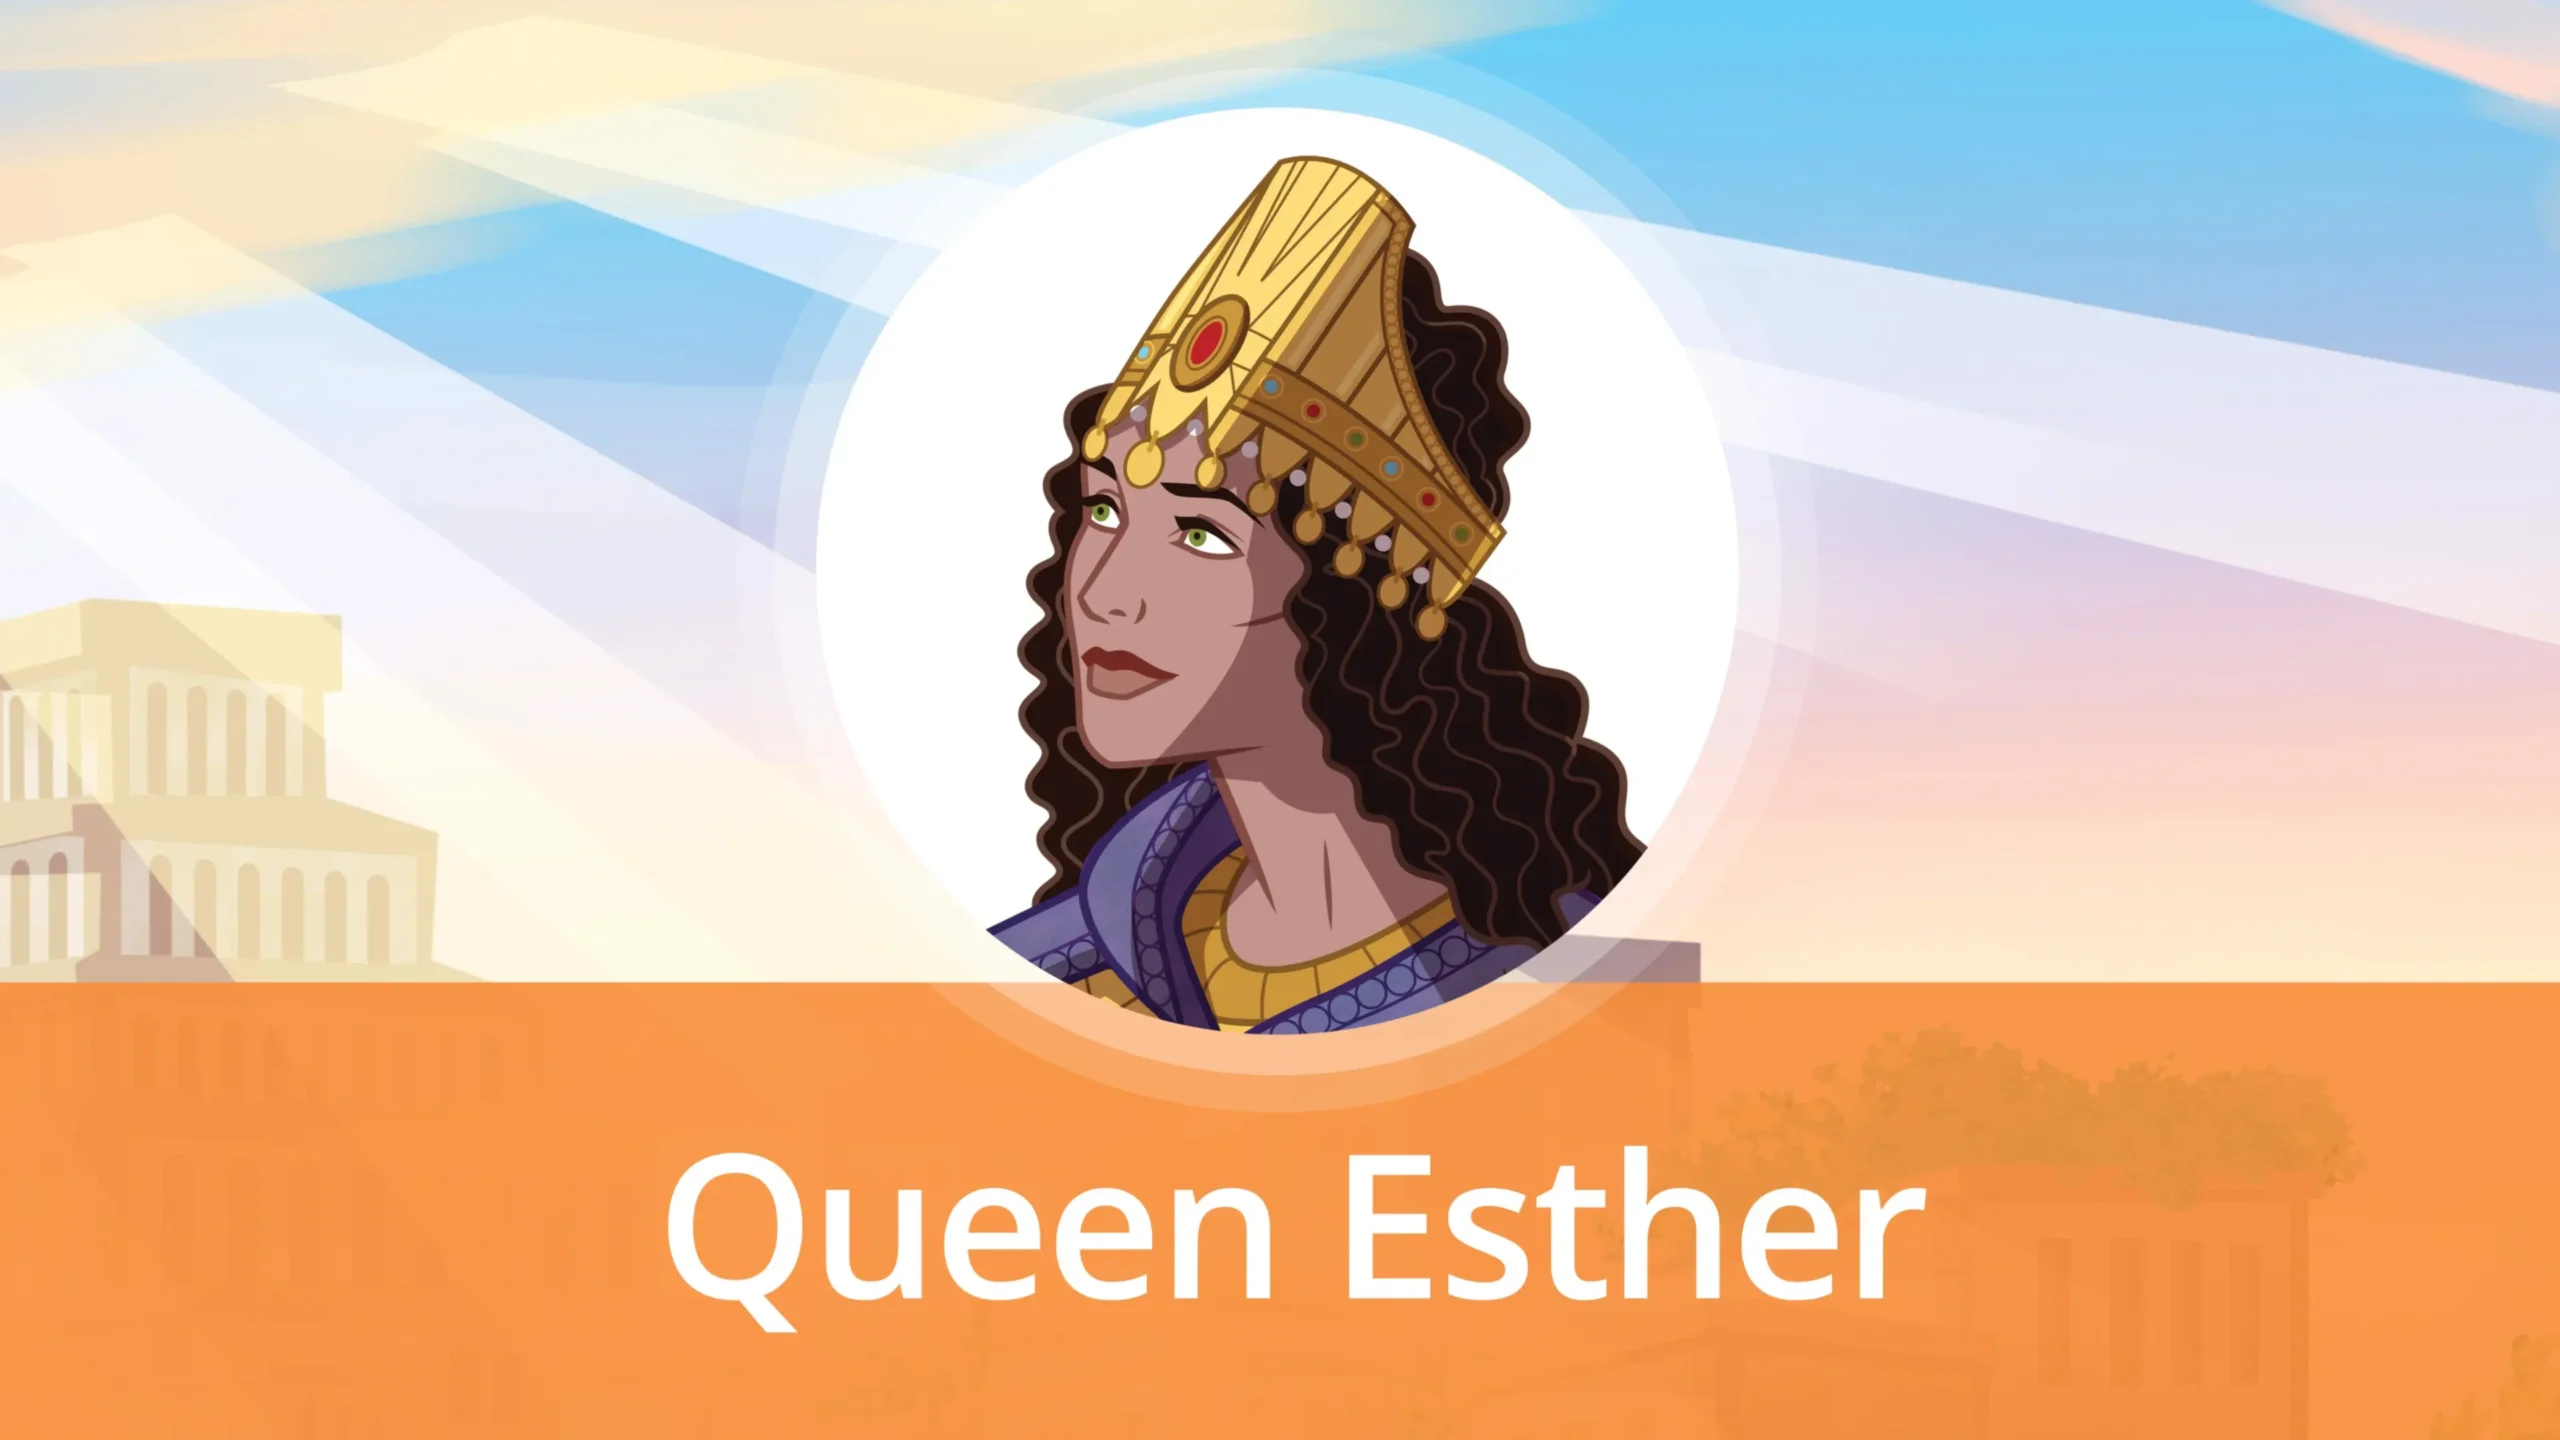 resumen biblico de ester - Quién es Ester en la Biblia resumen